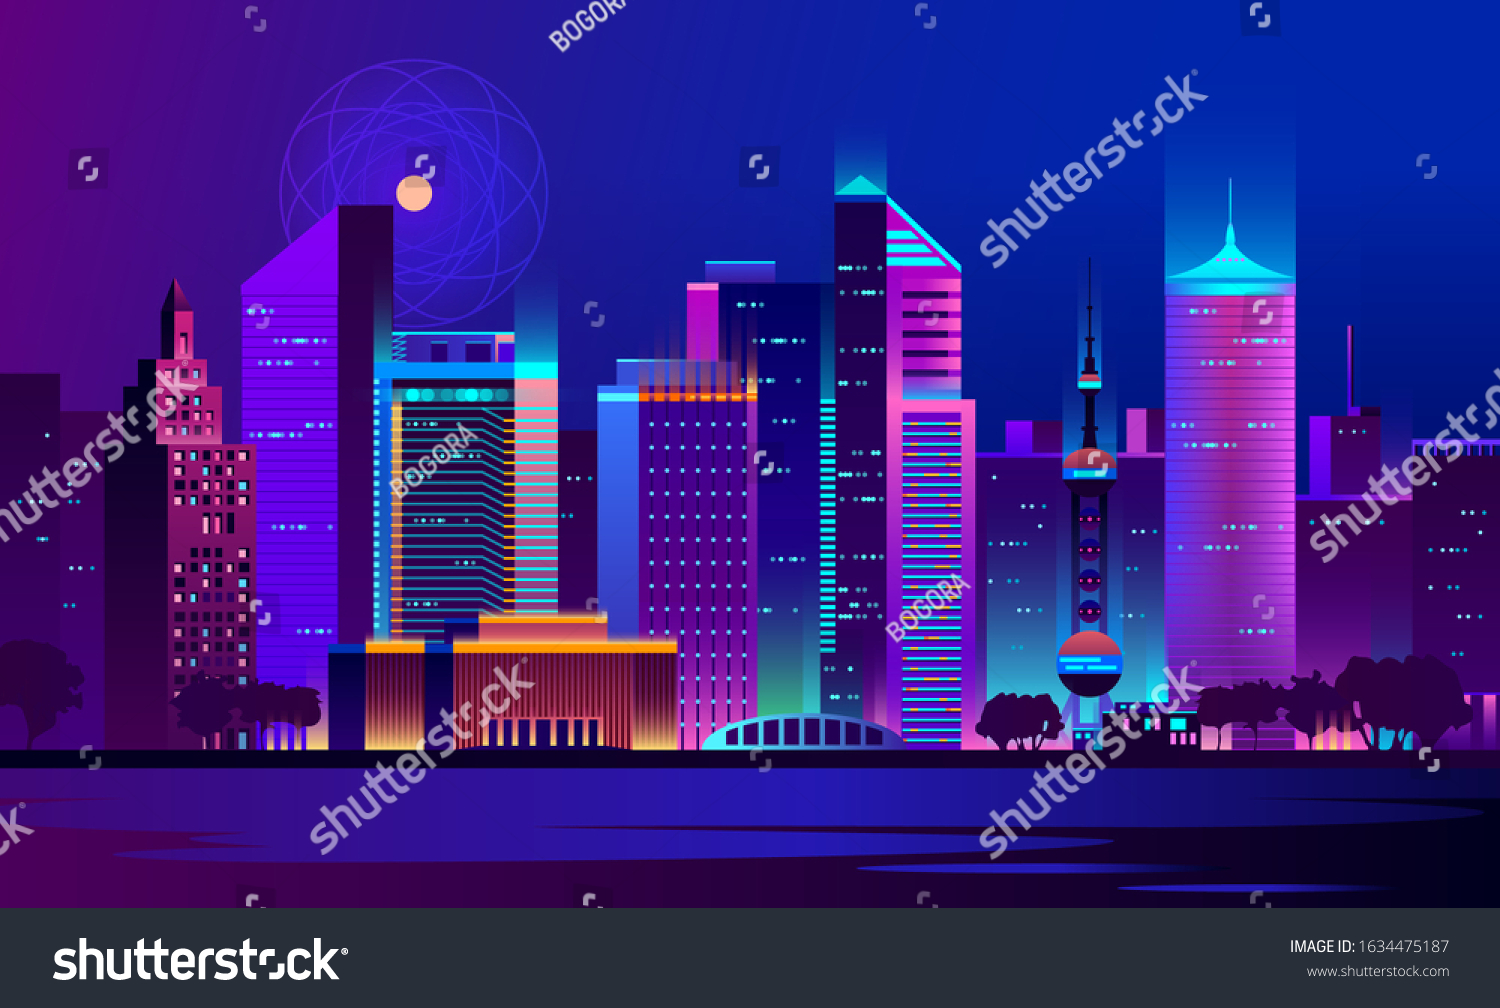 未来的夜城 城市景观在一个黑暗的背景下 明亮而发光的霓虹灯紫色和蓝色的灯光 赛博朋克和复古波浪风格插图 库存矢量图 免版税 Shutterstock